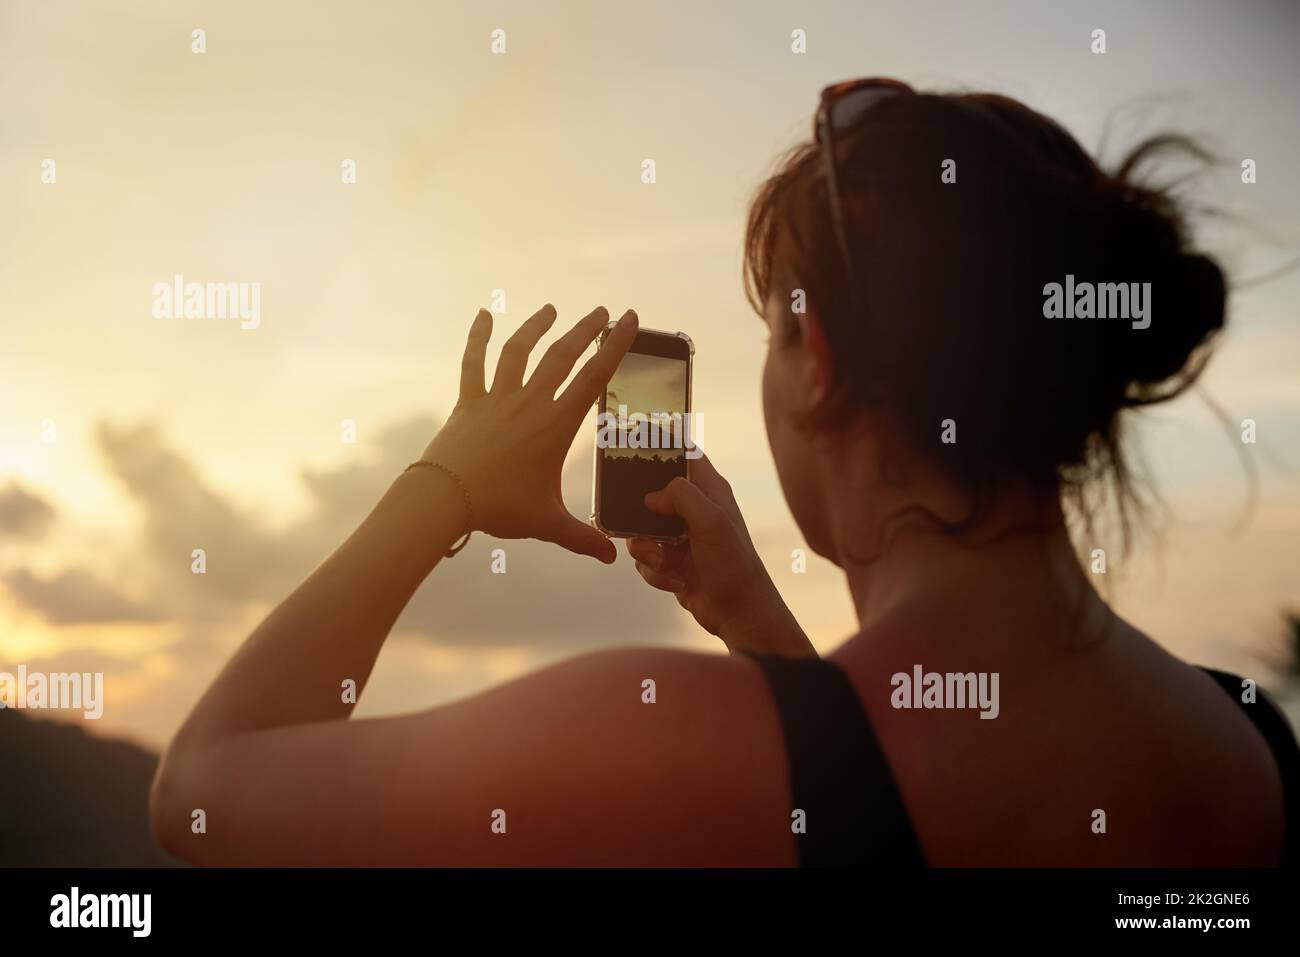 Ich kann es kaum erwarten, diese Ansicht zu teilen. Aufnahme einer jungen Frau, die im Urlaub mit ihrem Handy einen tropischen Ausblick fotografiert. Stockfoto